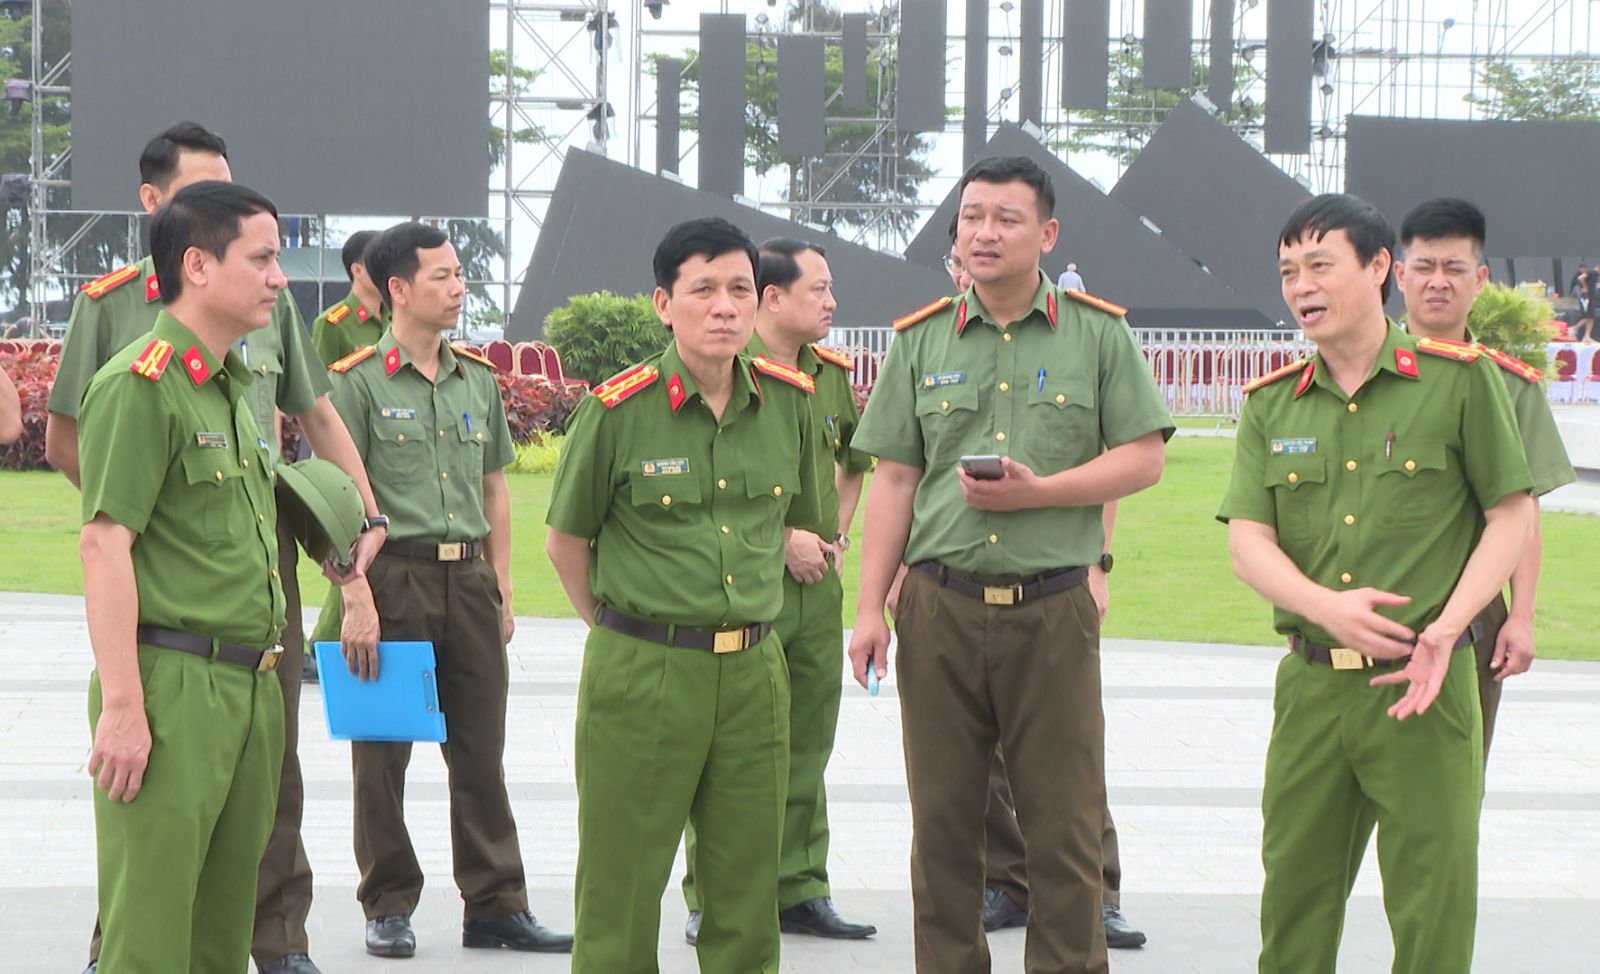 Văn hoá - Hơn 1.000 cảnh sát tham gia bảo đảm ANTT đêm khai mạc du lịch Sầm Sơn (Hình 2).